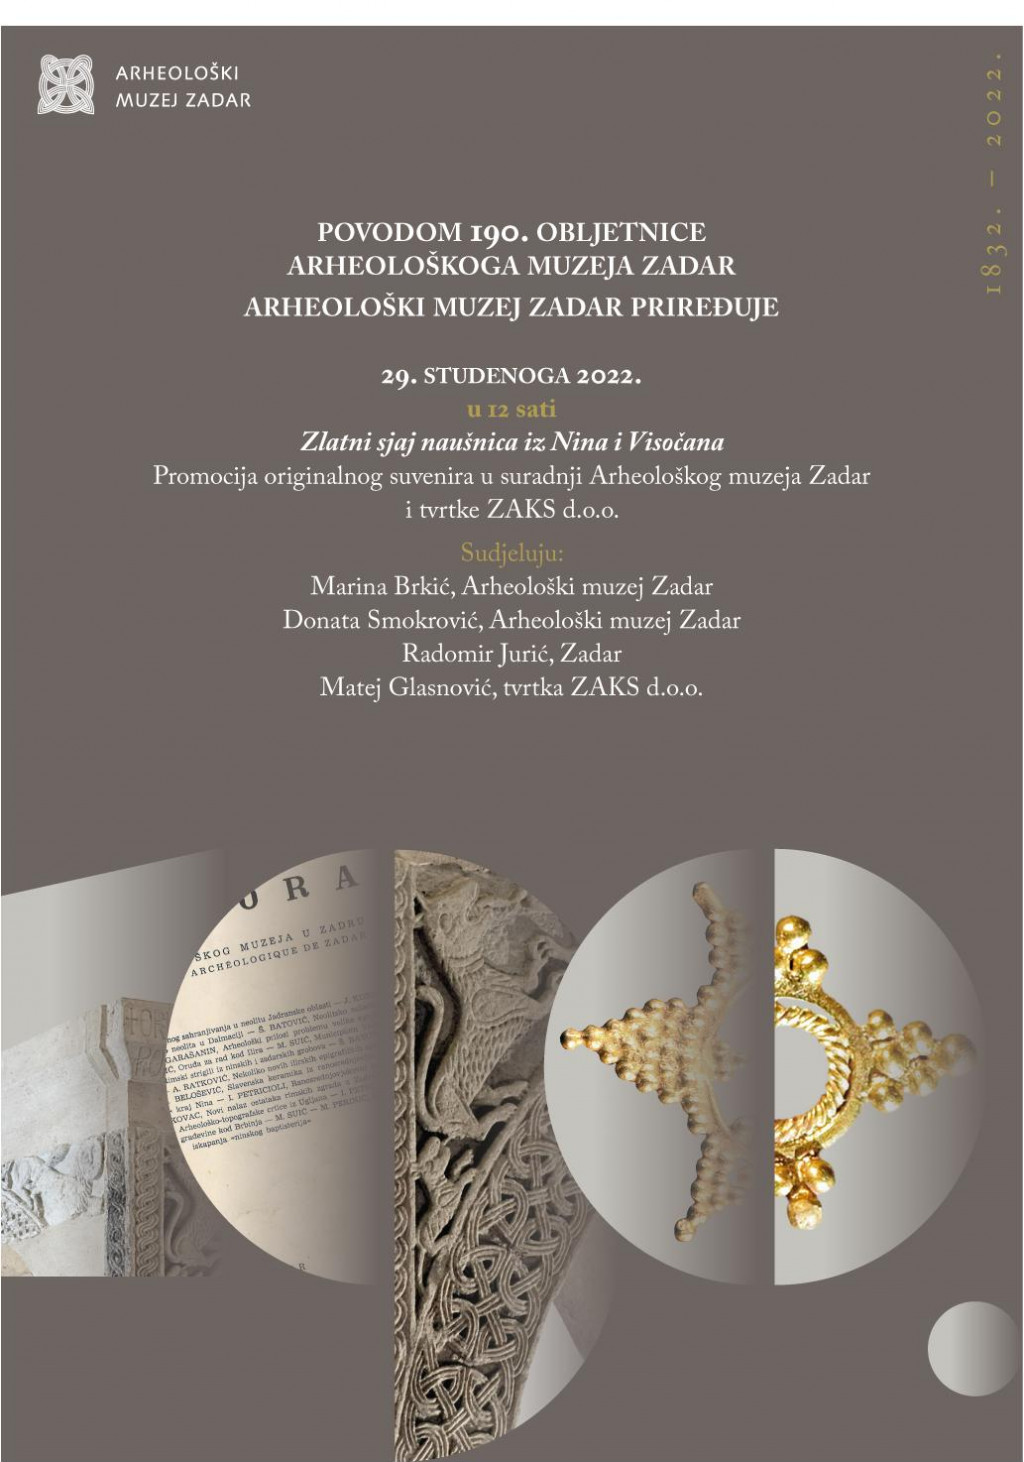 &lt;p&gt;Arheološki muzej Zadar&lt;/p&gt;